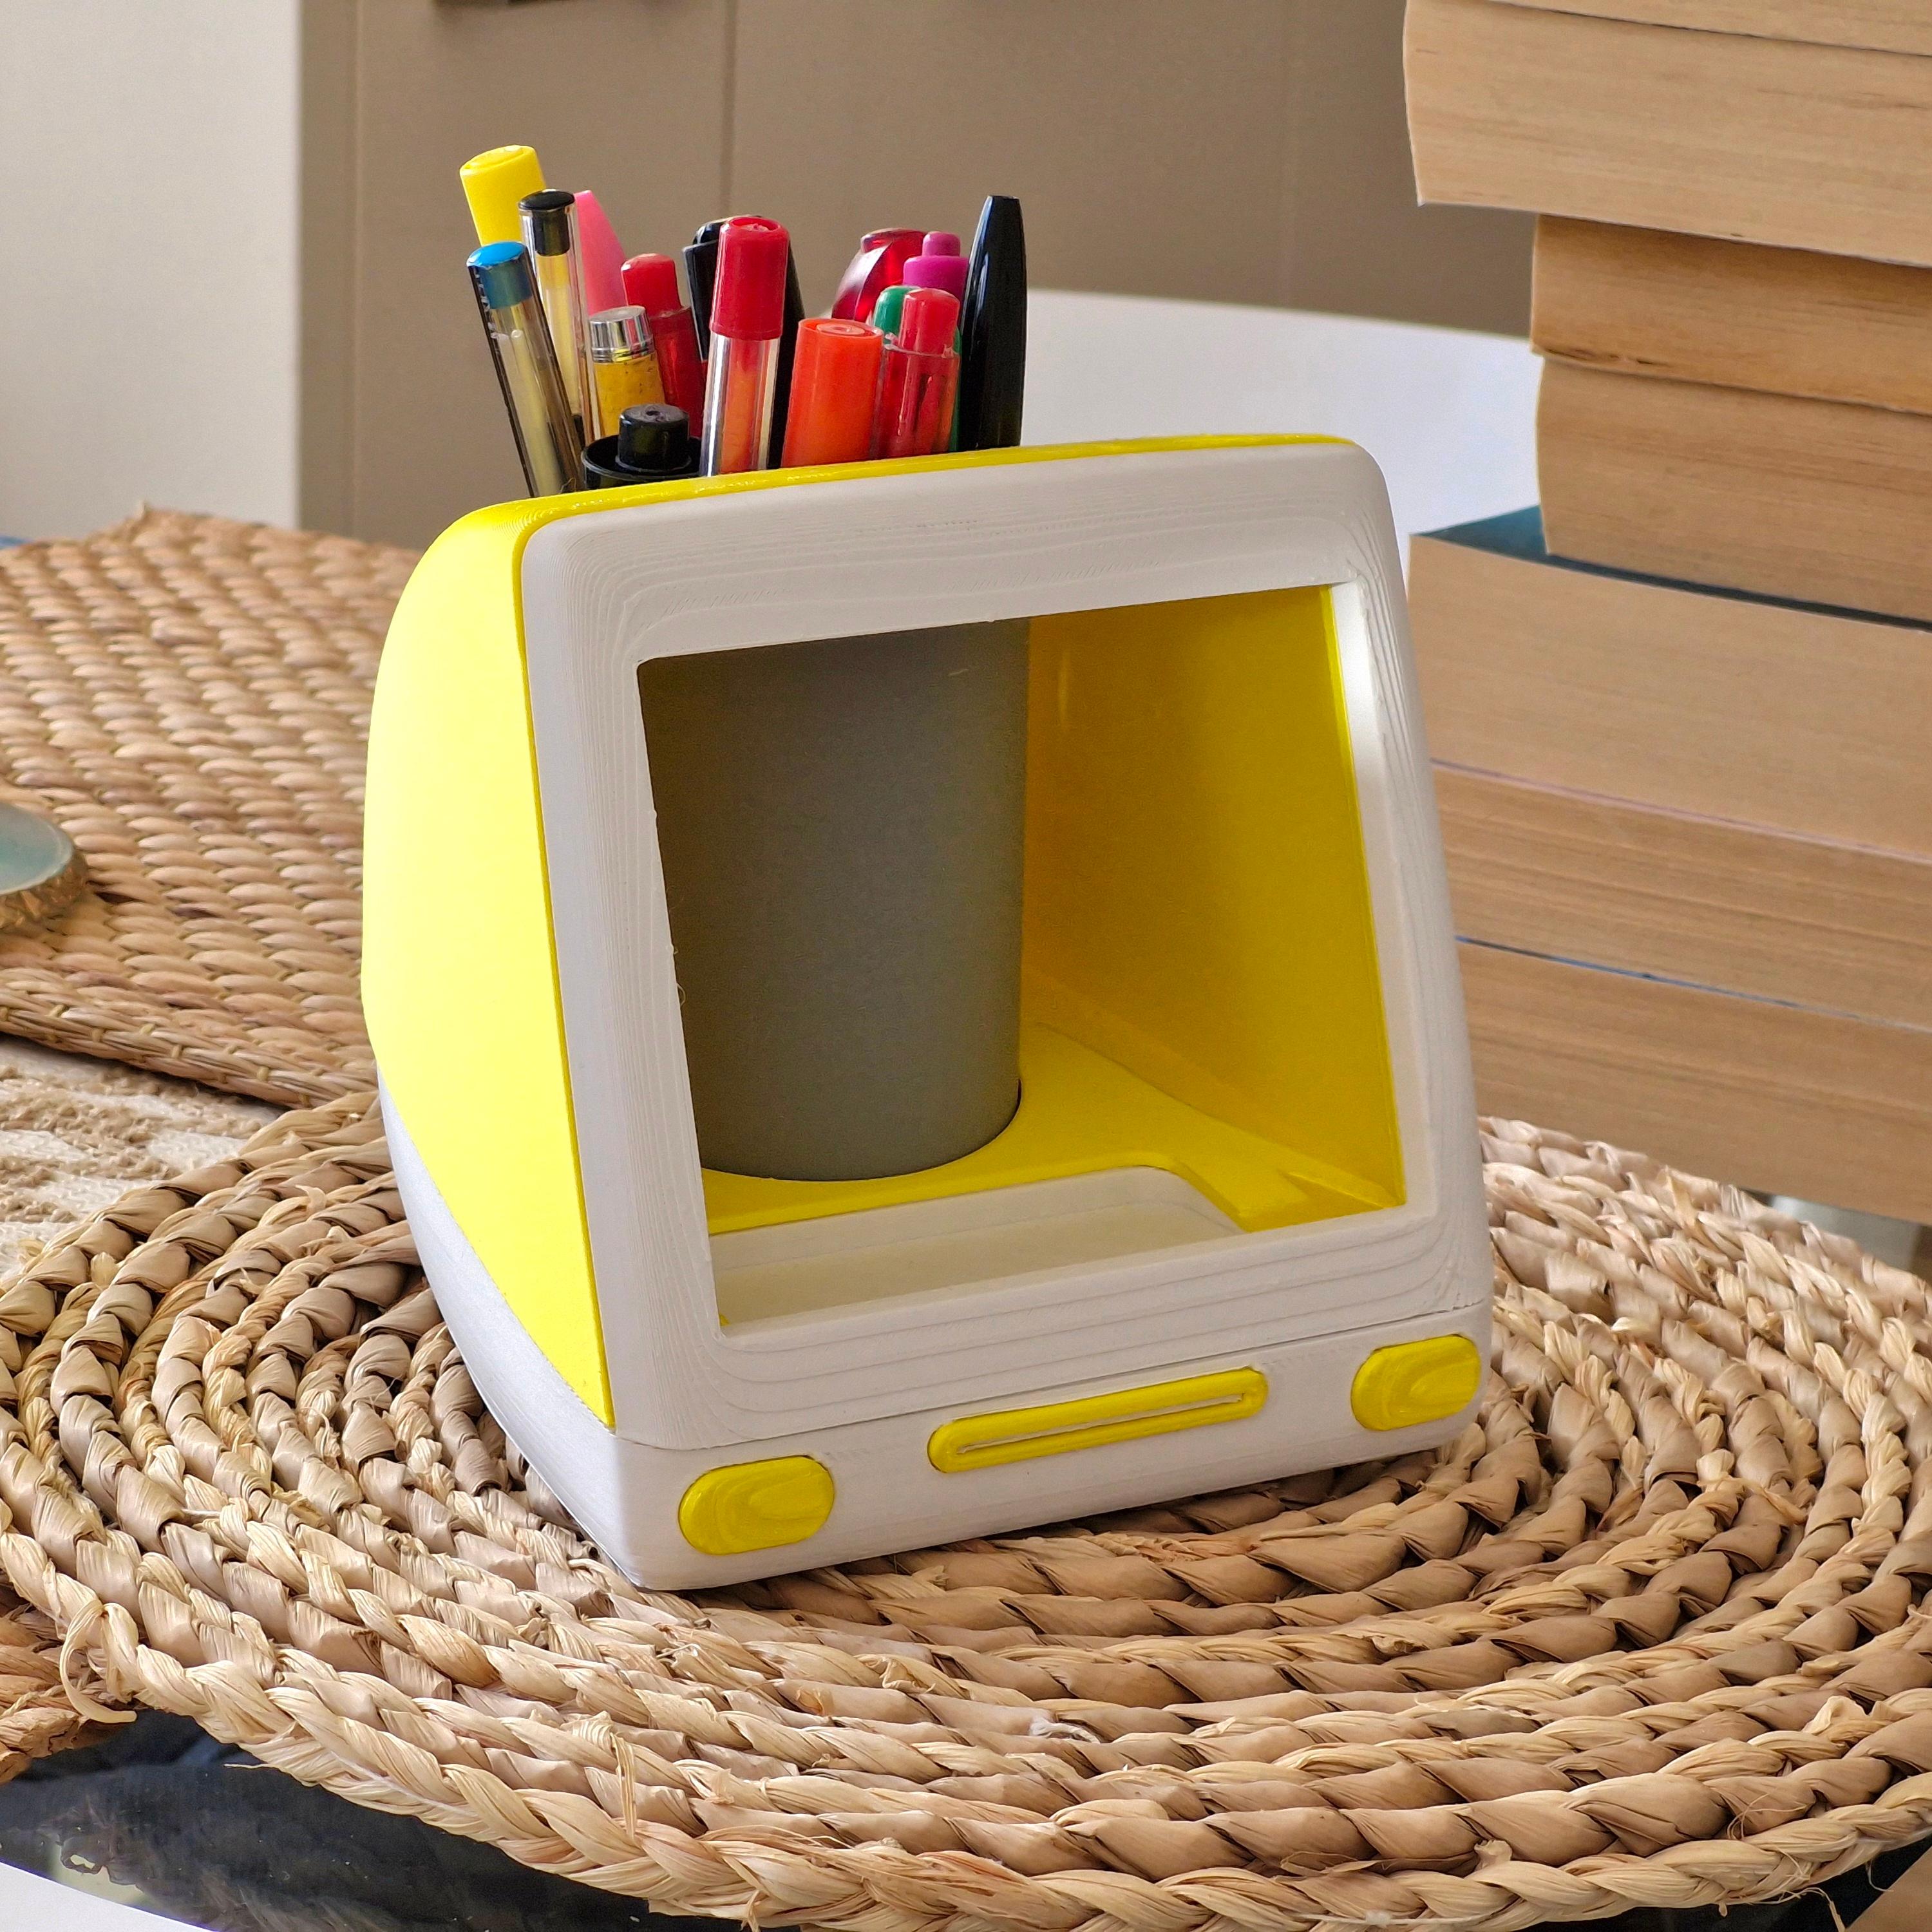 iMac G3 Style Stationery Pot 3d model